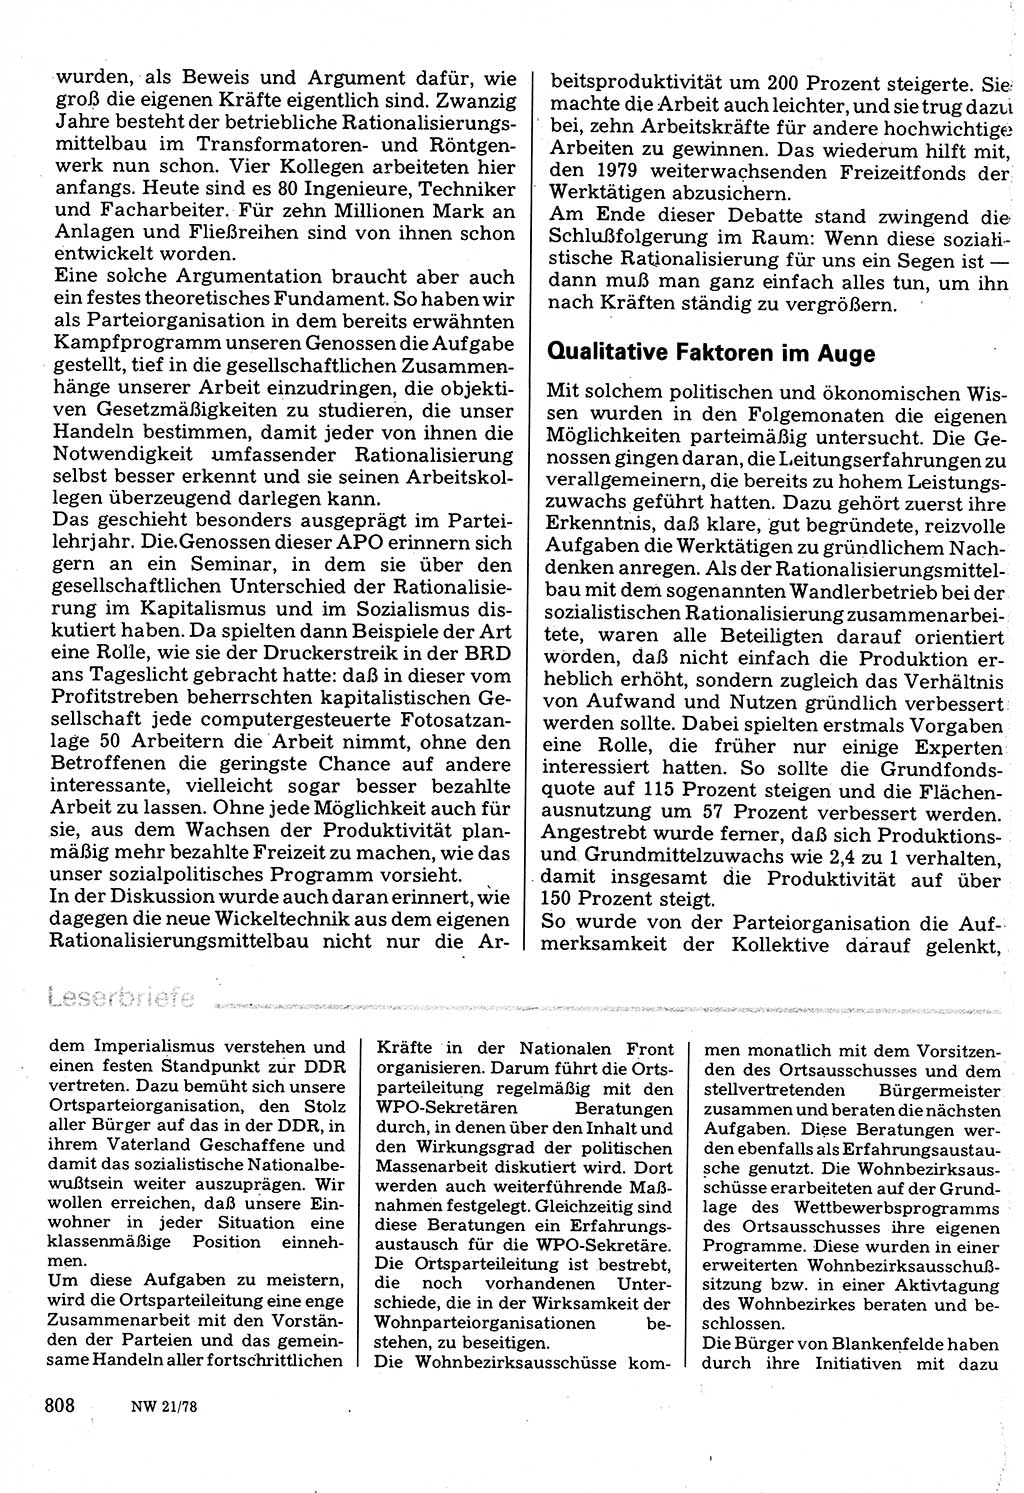 Neuer Weg (NW), Organ des Zentralkomitees (ZK) der SED (Sozialistische Einheitspartei Deutschlands) für Fragen des Parteilebens, 33. Jahrgang [Deutsche Demokratische Republik (DDR)] 1978, Seite 808 (NW ZK SED DDR 1978, S. 808)